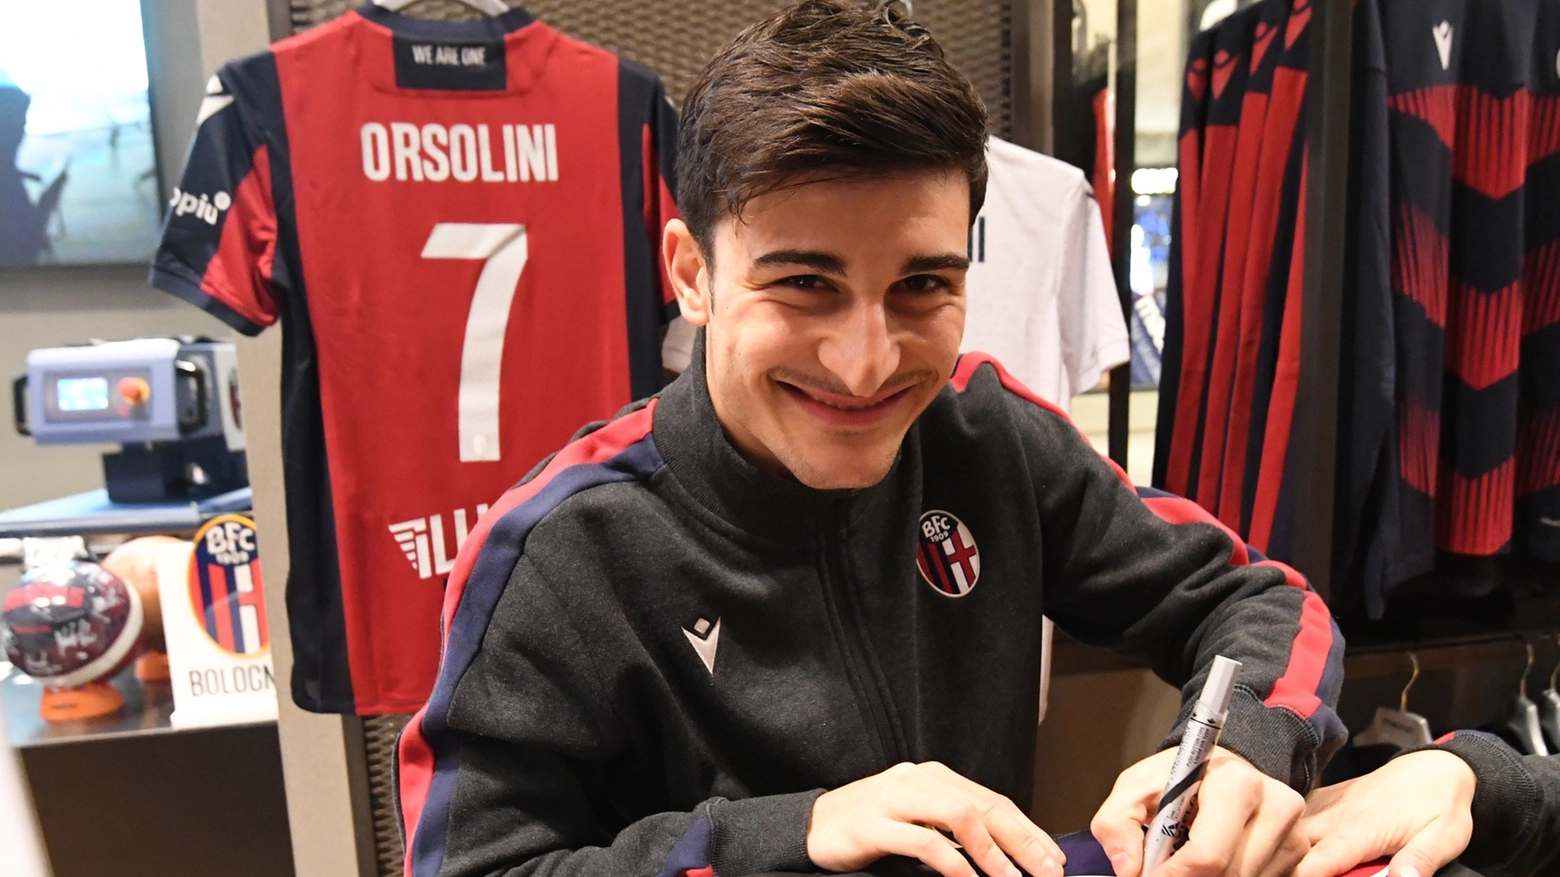 Orsolini firma autografi sorridente al Bologna Store della Galleria Cavour (foto Schicchi)